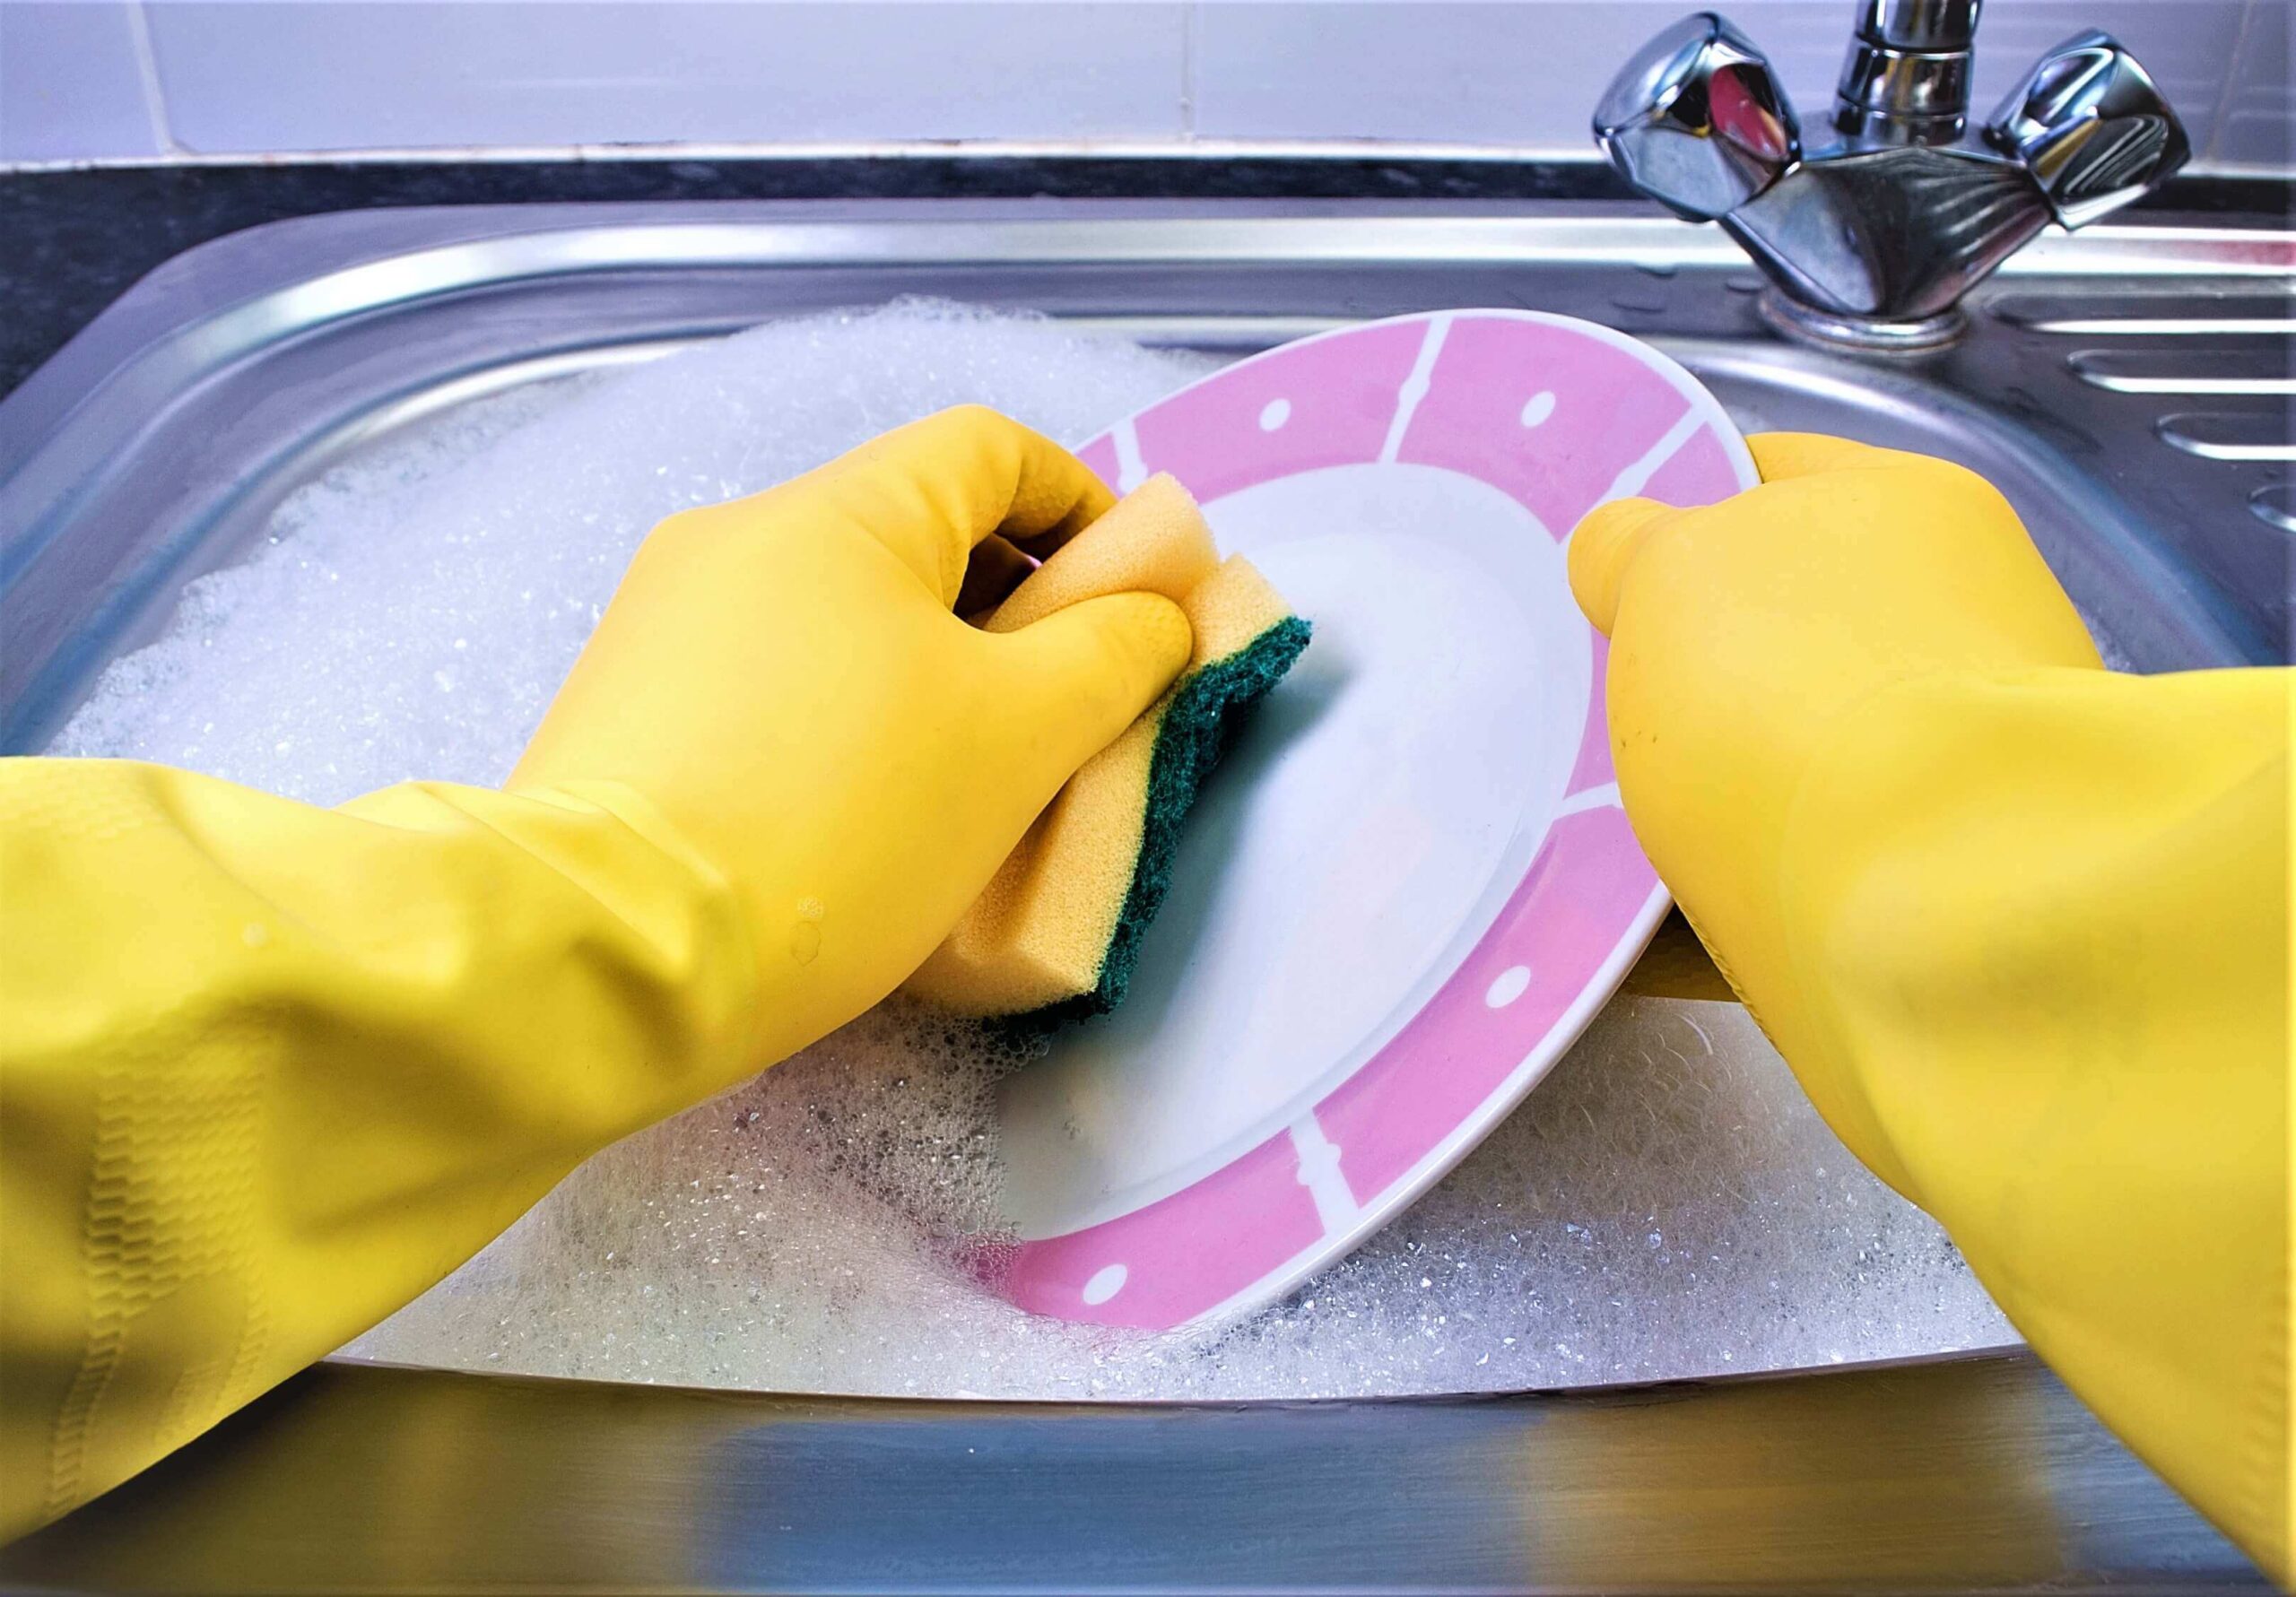 Dishwasher vacancies in Canada